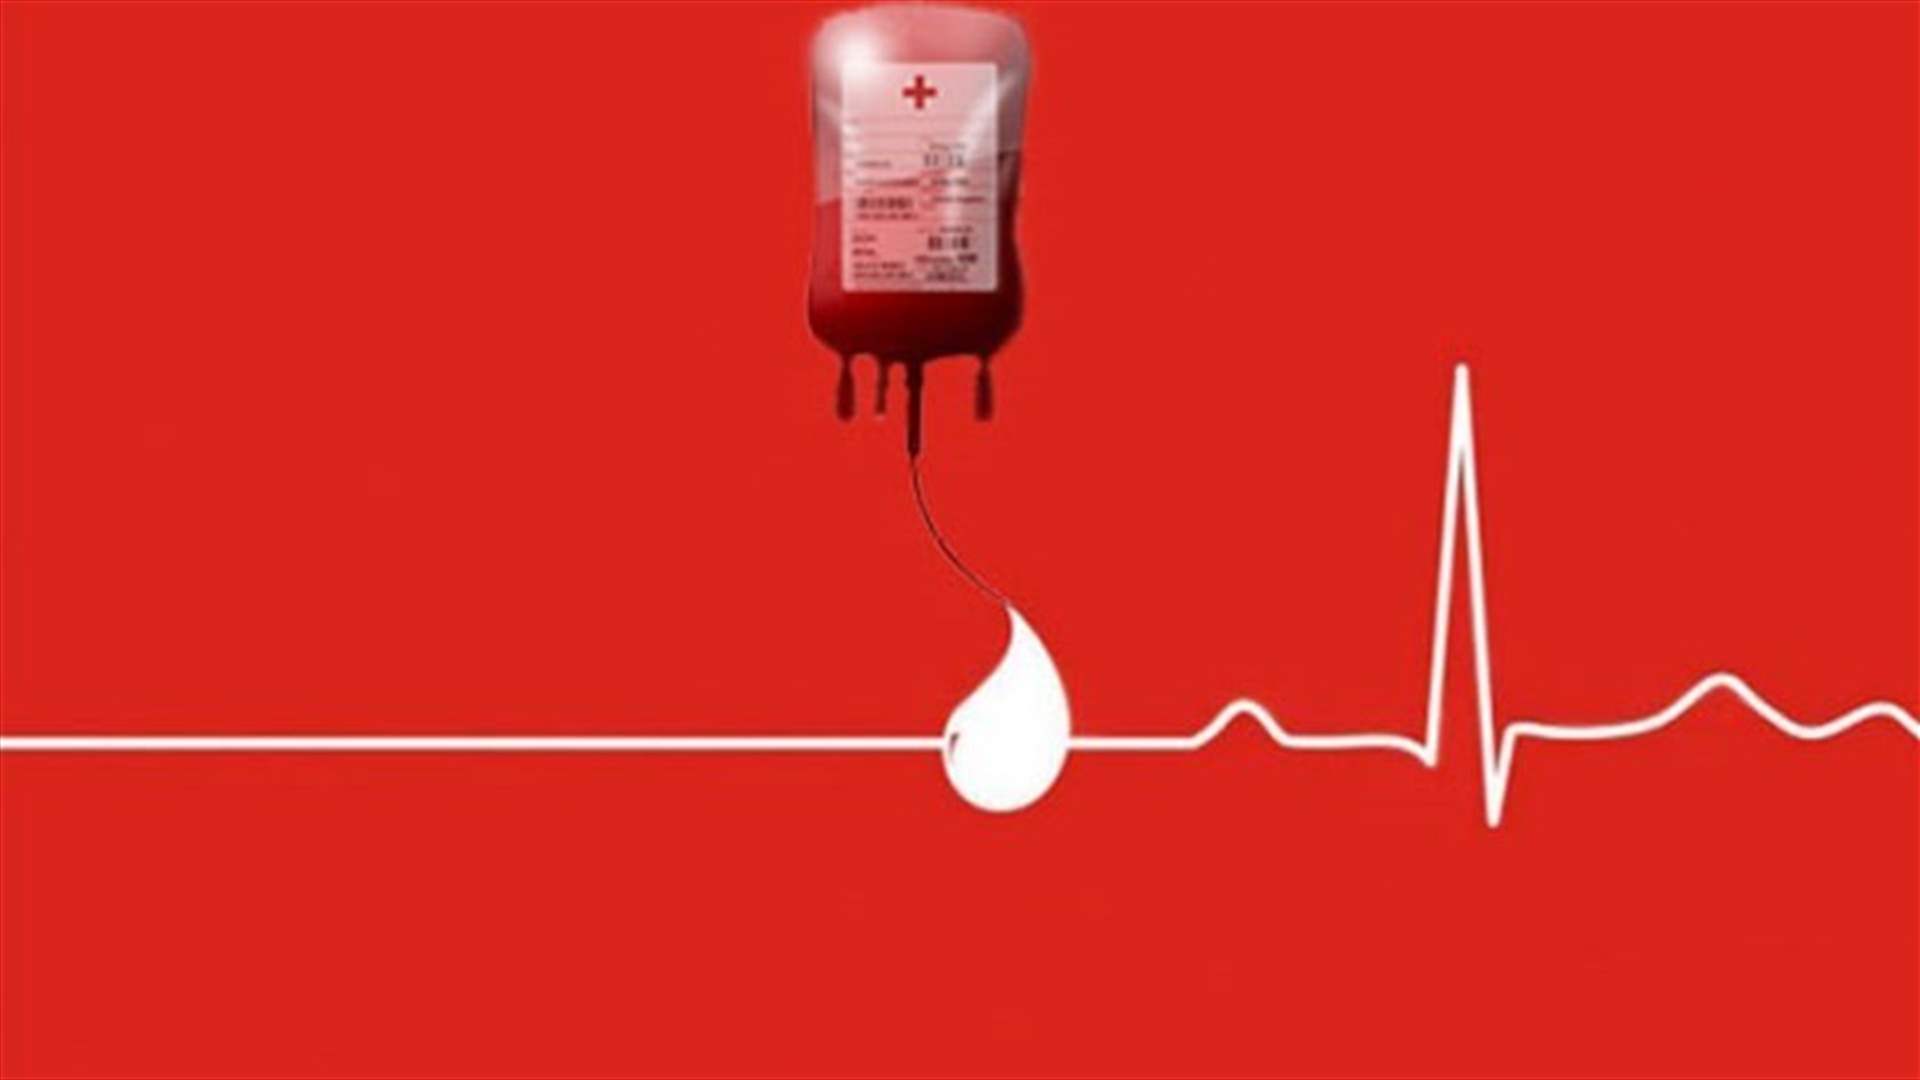 مريضة بحاجة ماسة إلى وحدتي دم من فئة A+... للتبرع في مركز الصليب الأحمر في سبيرز وللمزيد من المعلومات الإتصال على الرقم 71941449